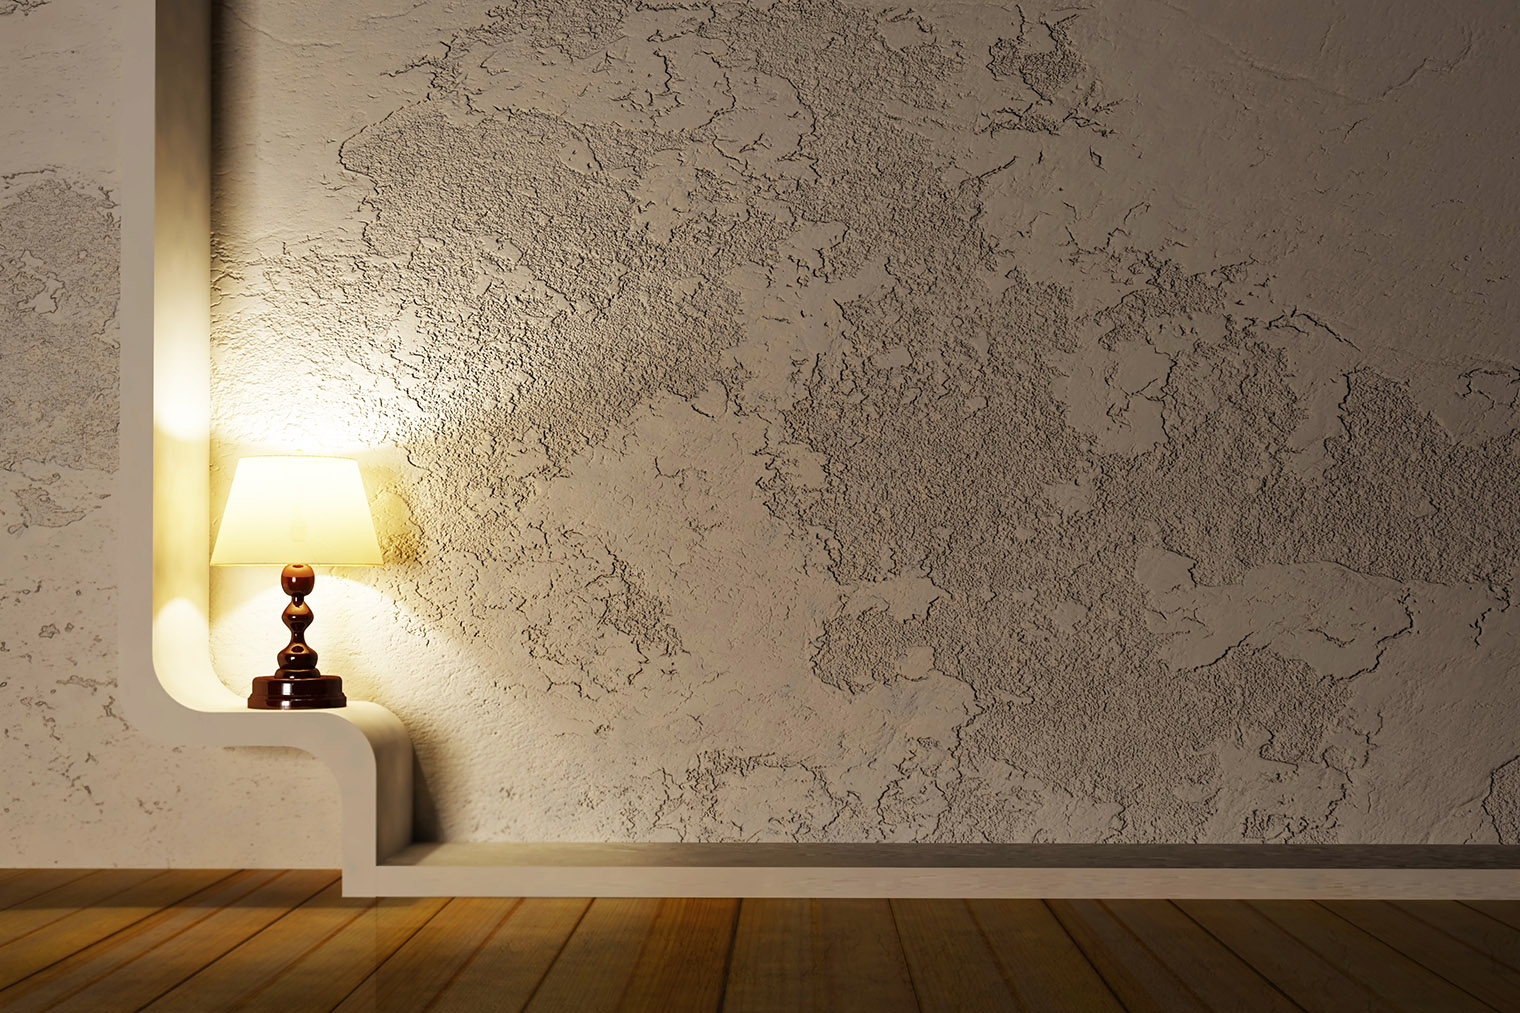 Так выглядит техника «Карта мира» в чистом виде, без слоя венецианской штукатурки. Фотография: OLEKSANDR ROZDOBUDKO / Shutterstock